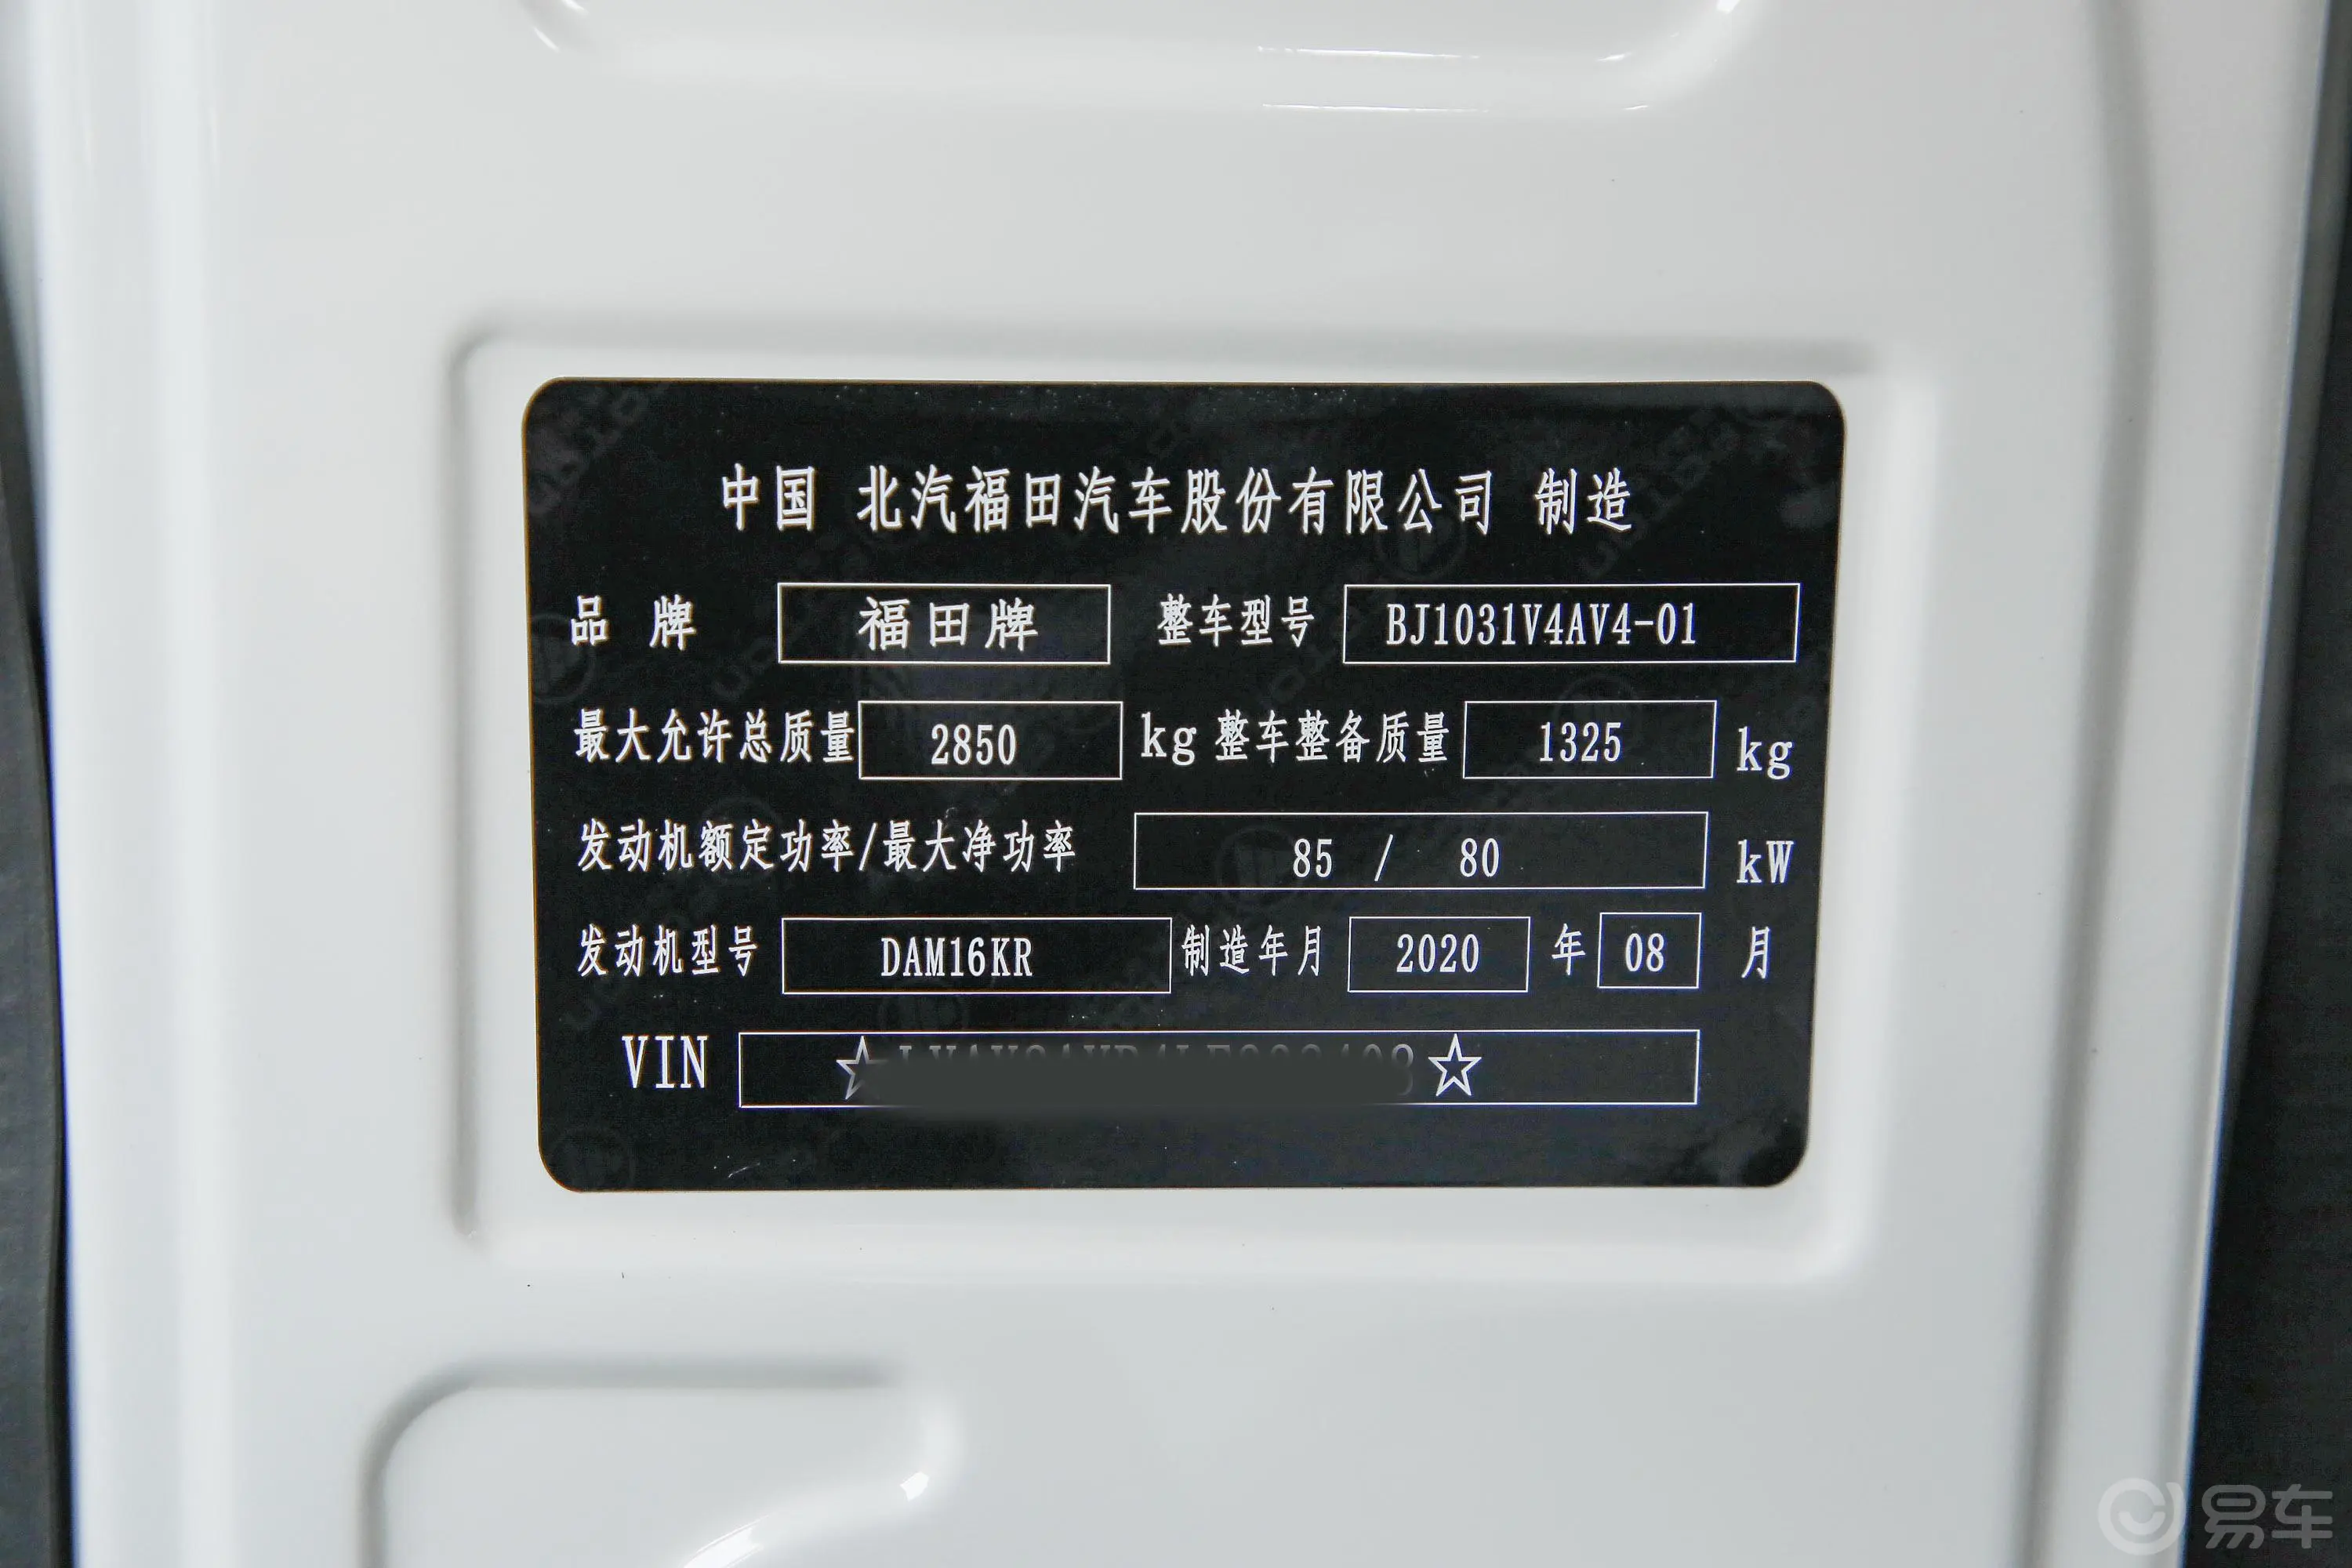 祥菱MM1 载货 1.6L 手动 双排后单胎DAM16KR车辆信息铭牌